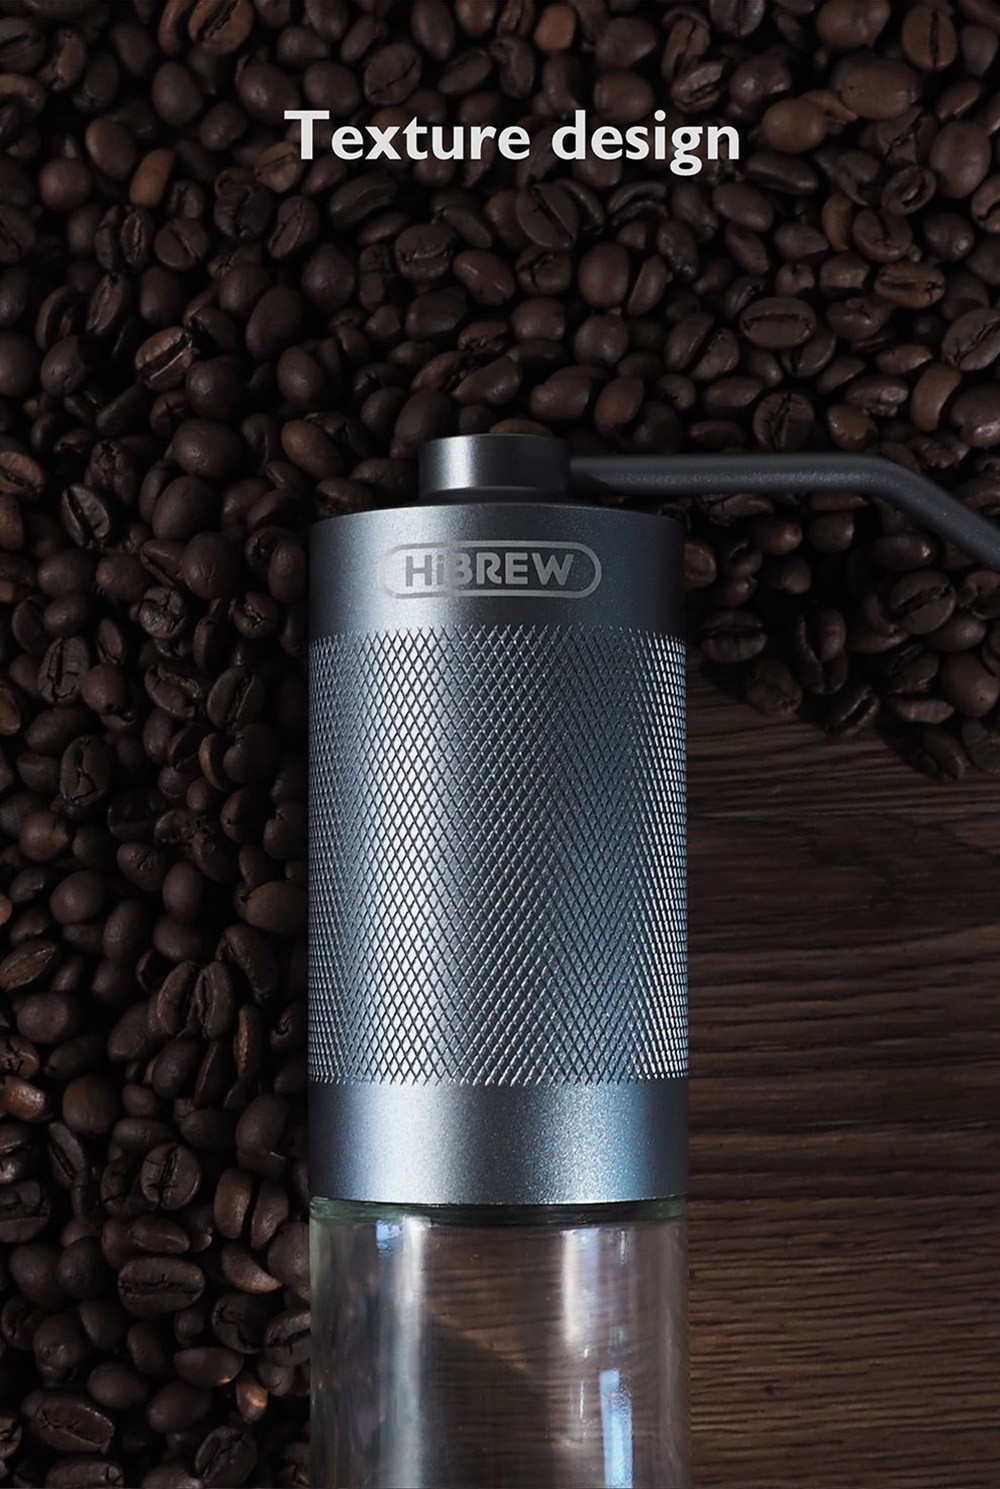 HiBREW G4 Manuálny mlynček na kávu, prenosný hliníkový ručný mlynček s viditeľnou sklenenou nádobou, kapacita 18 g kávových zŕn